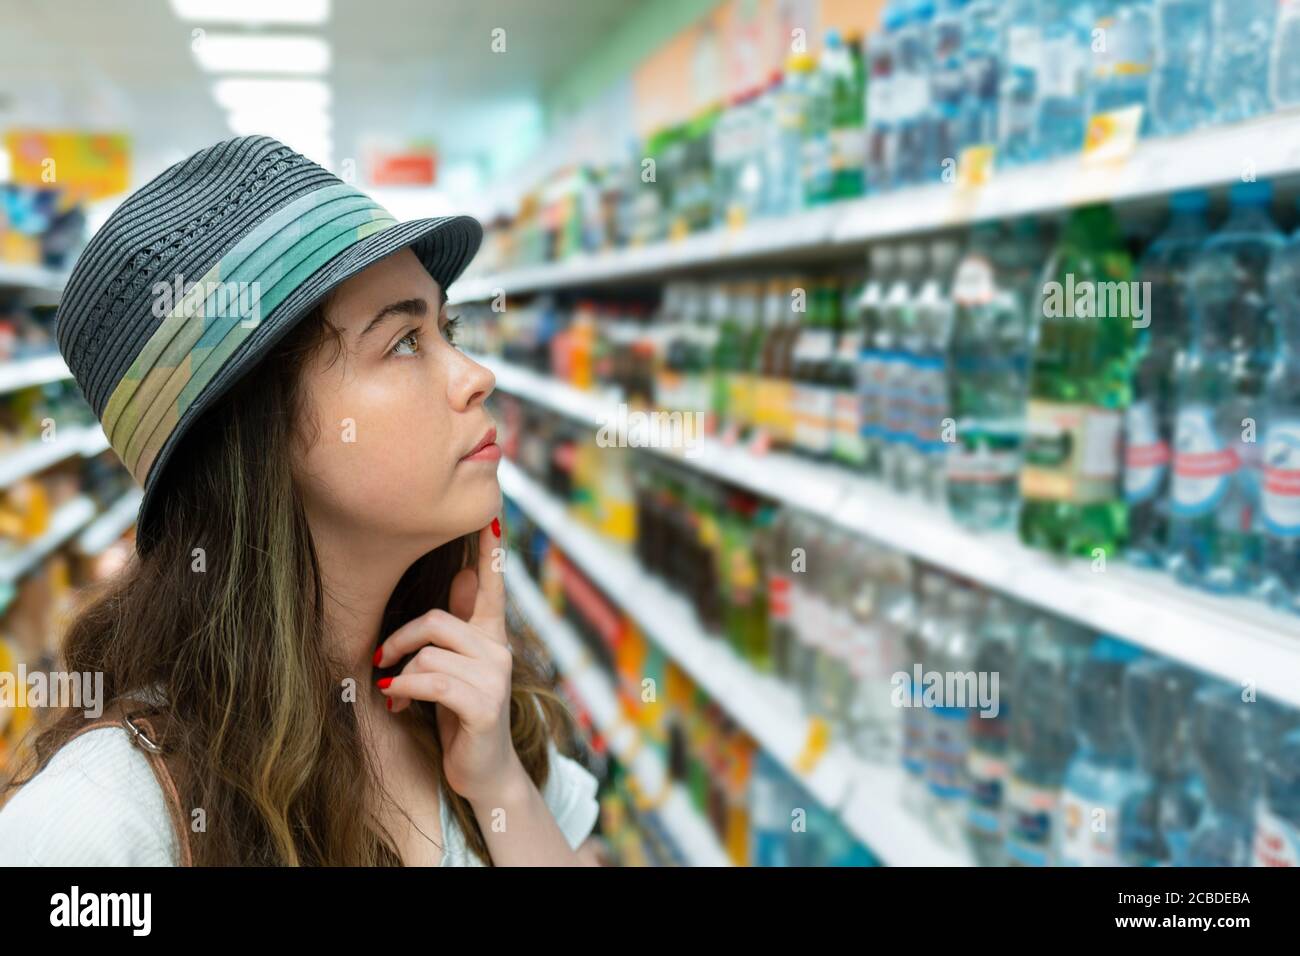 Une jeune femme choisit une bouteille d'eau dans le magasin. Concept de sélection de produits de supermarché. Banque D'Images